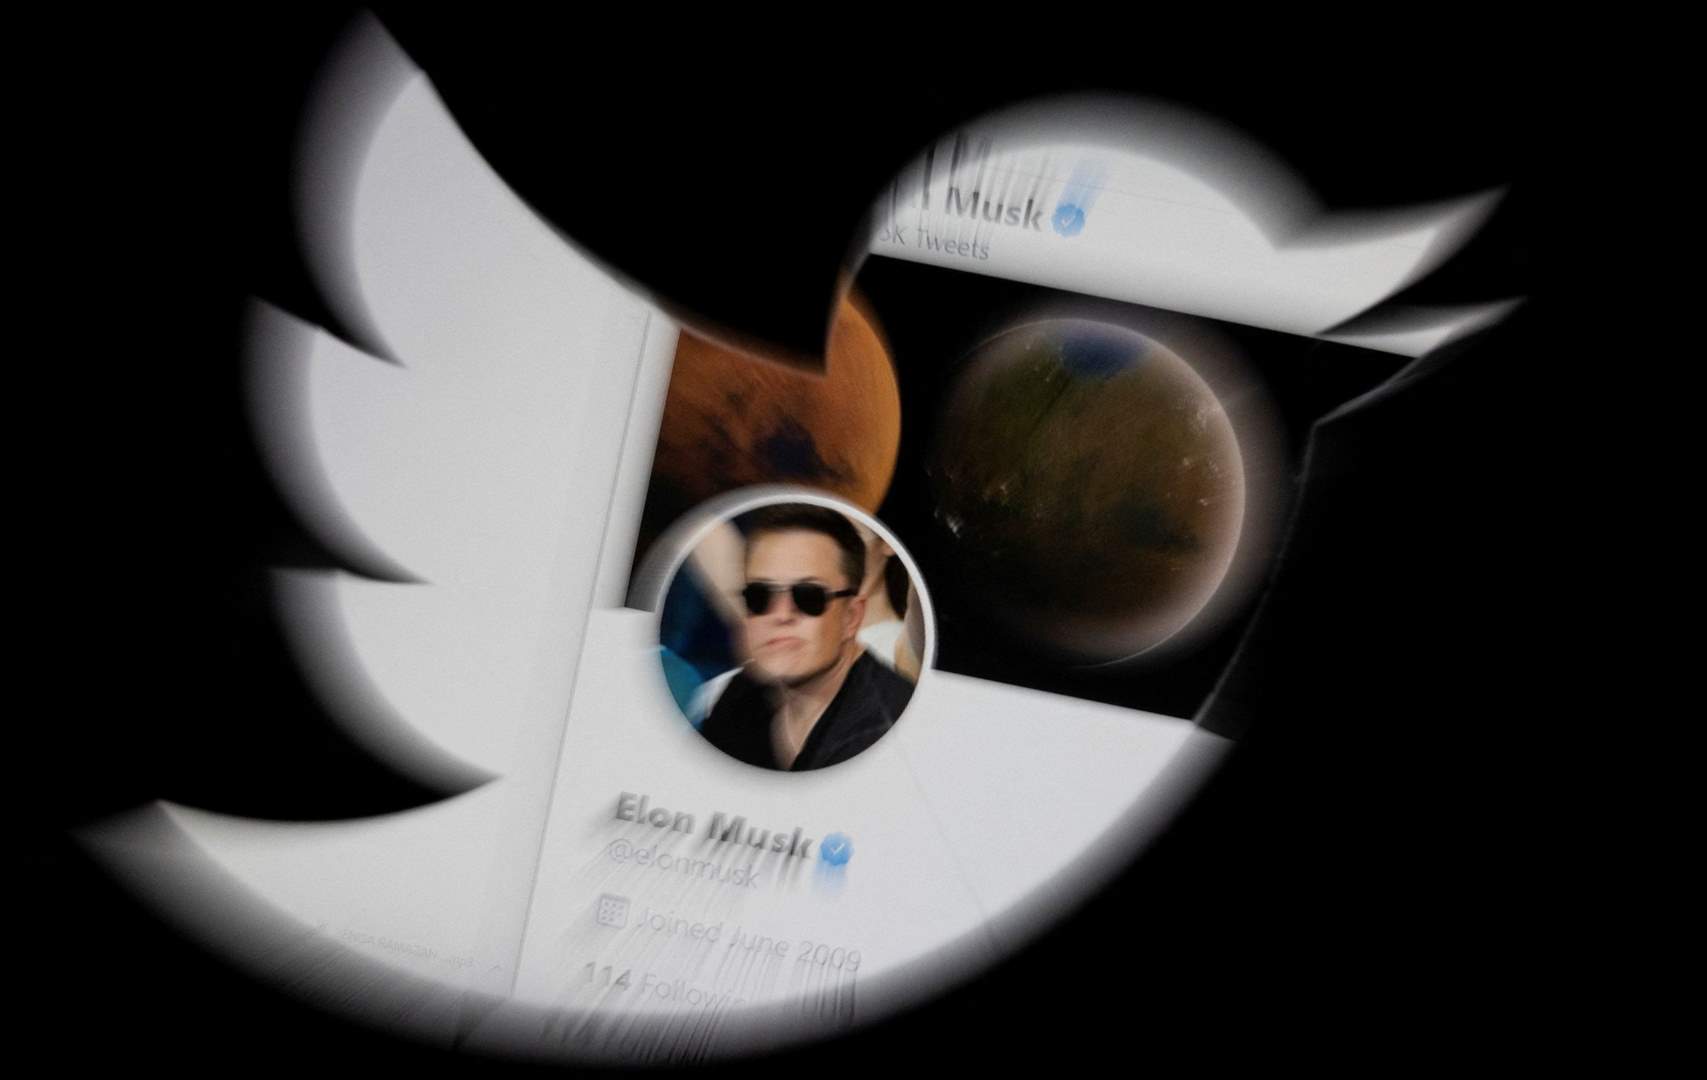 مجلس إدارة "تويتر" يوافق على عرض إيلون ماسك لشراء المنصة بـ44 مليار دولار